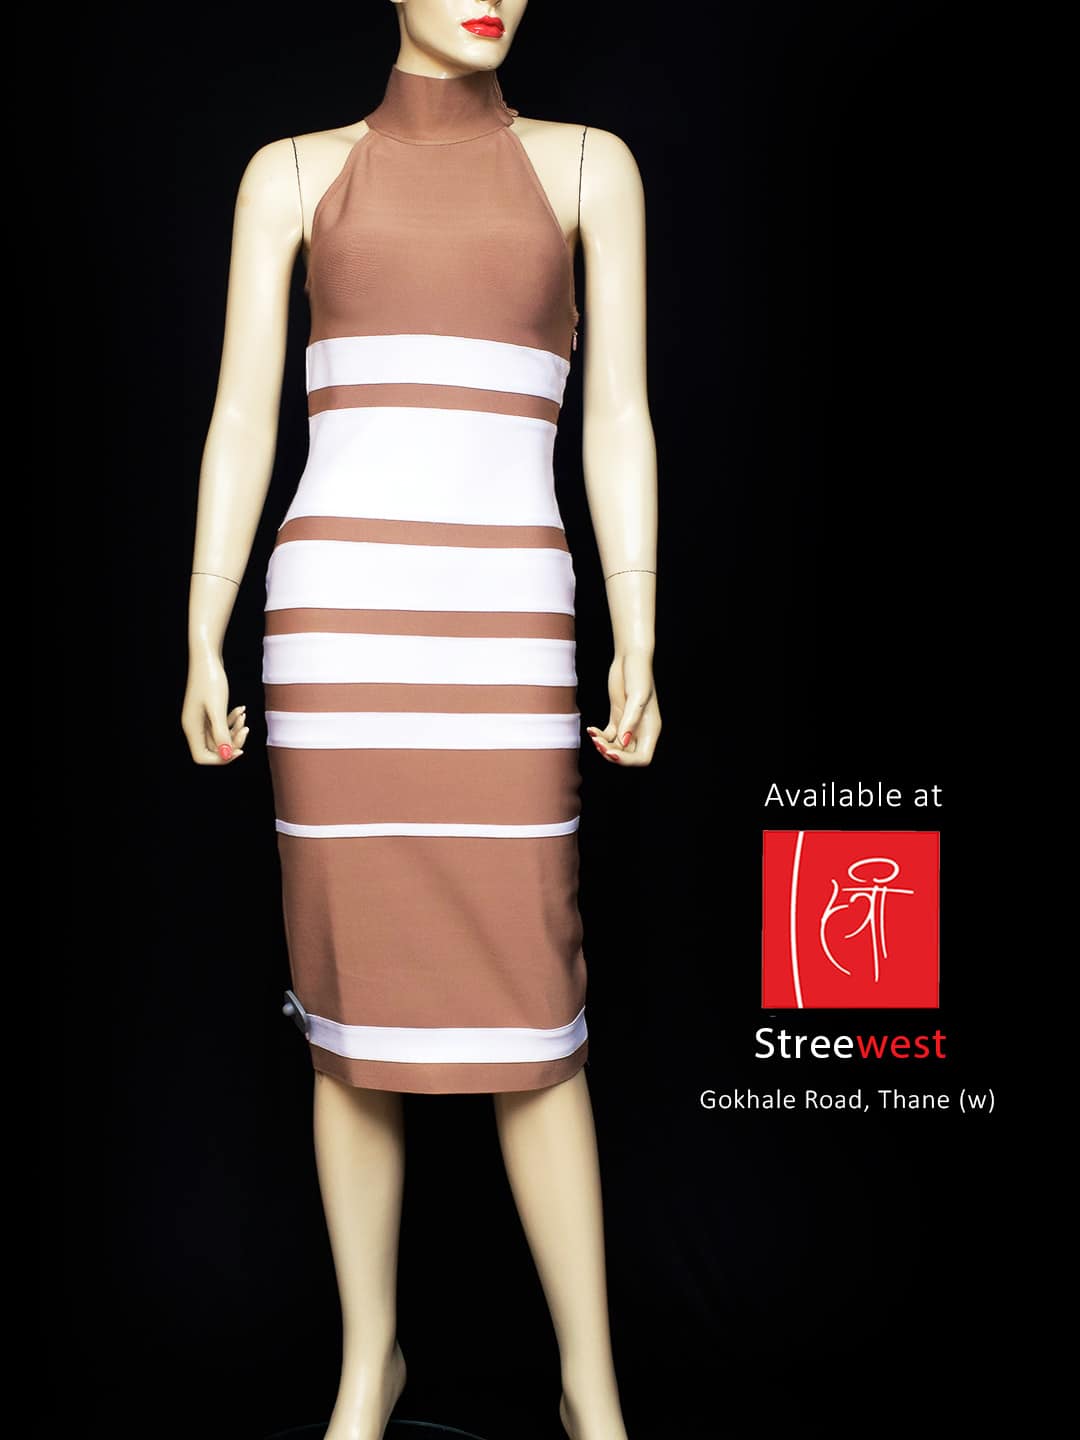 Fancydresswale girls dress new fashion One piece Long frock Maxi Gown –  fancydresswale.com